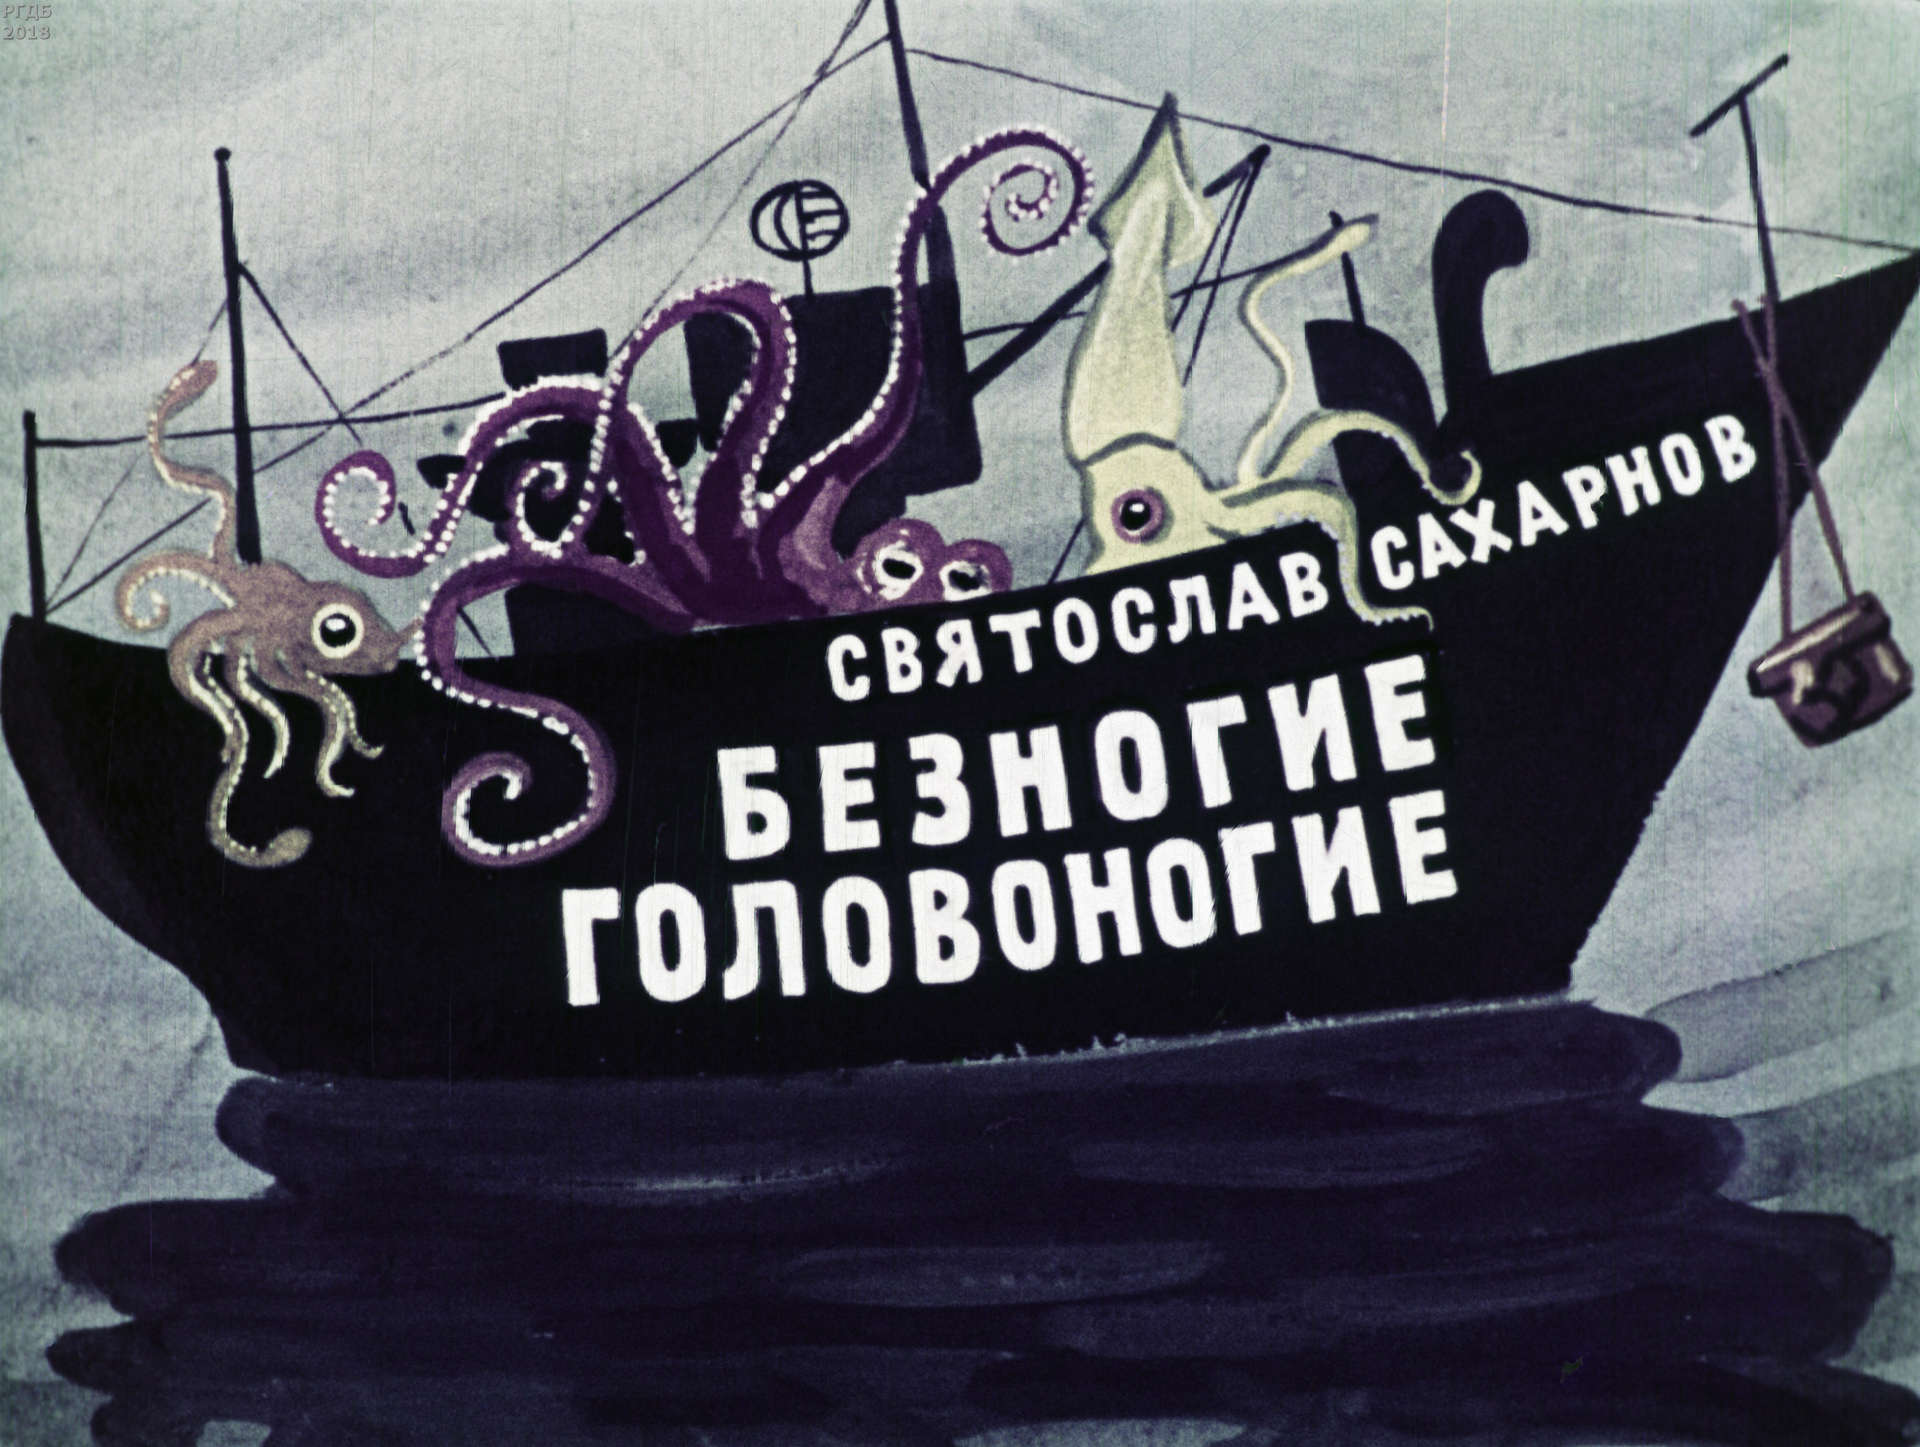 Сахарнов Святослав Владимирович - Безногие головоногие - 1969